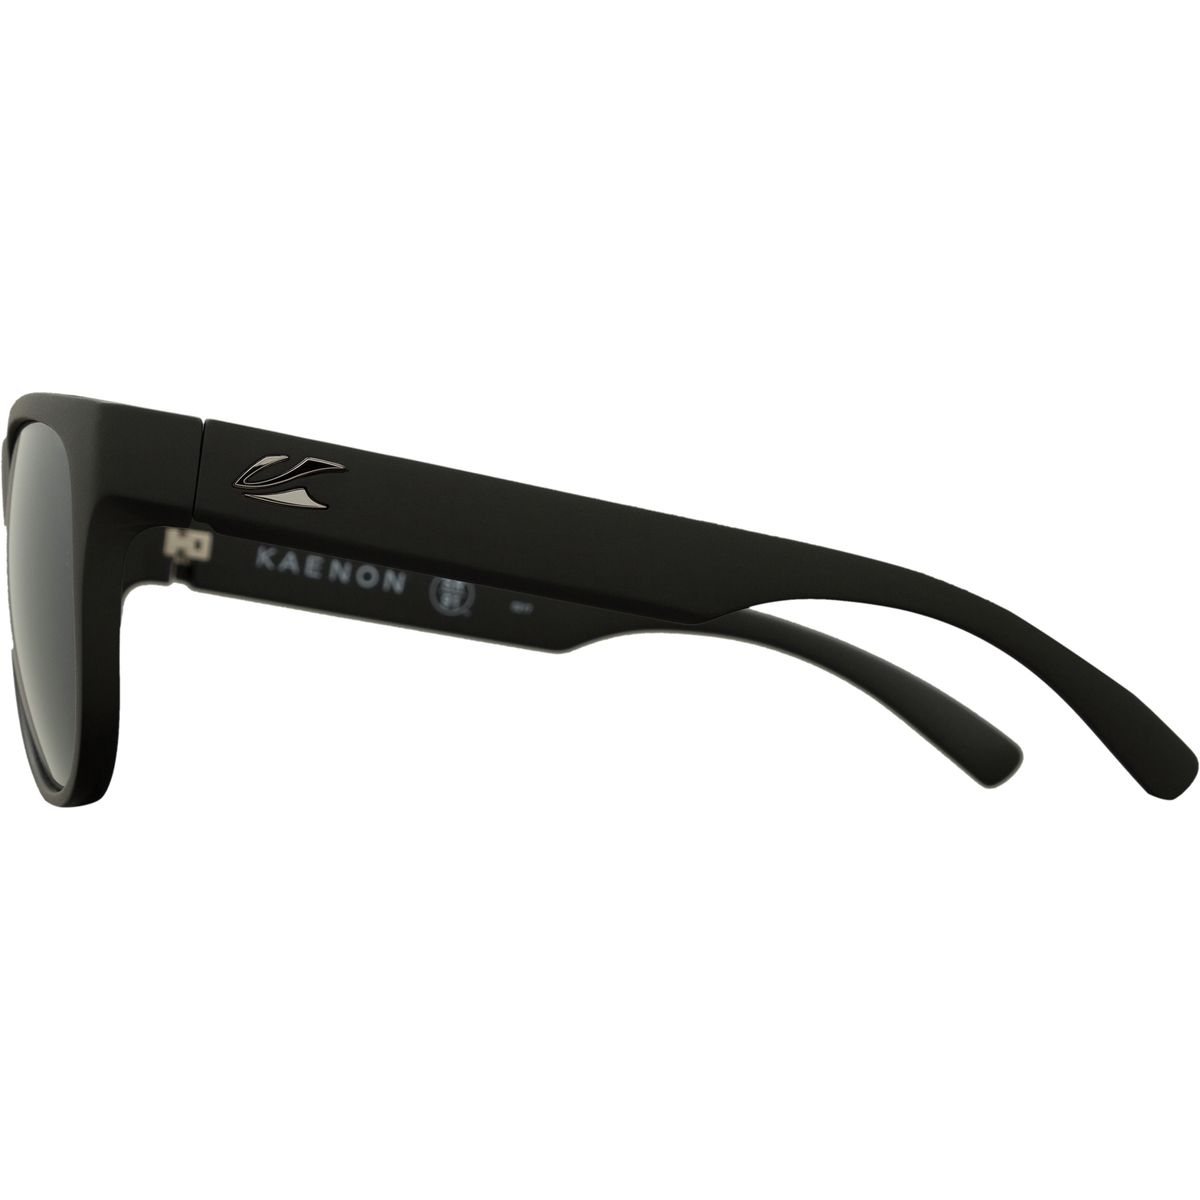 Поляризованные солнцезащитные очки Moonstone Kaenon